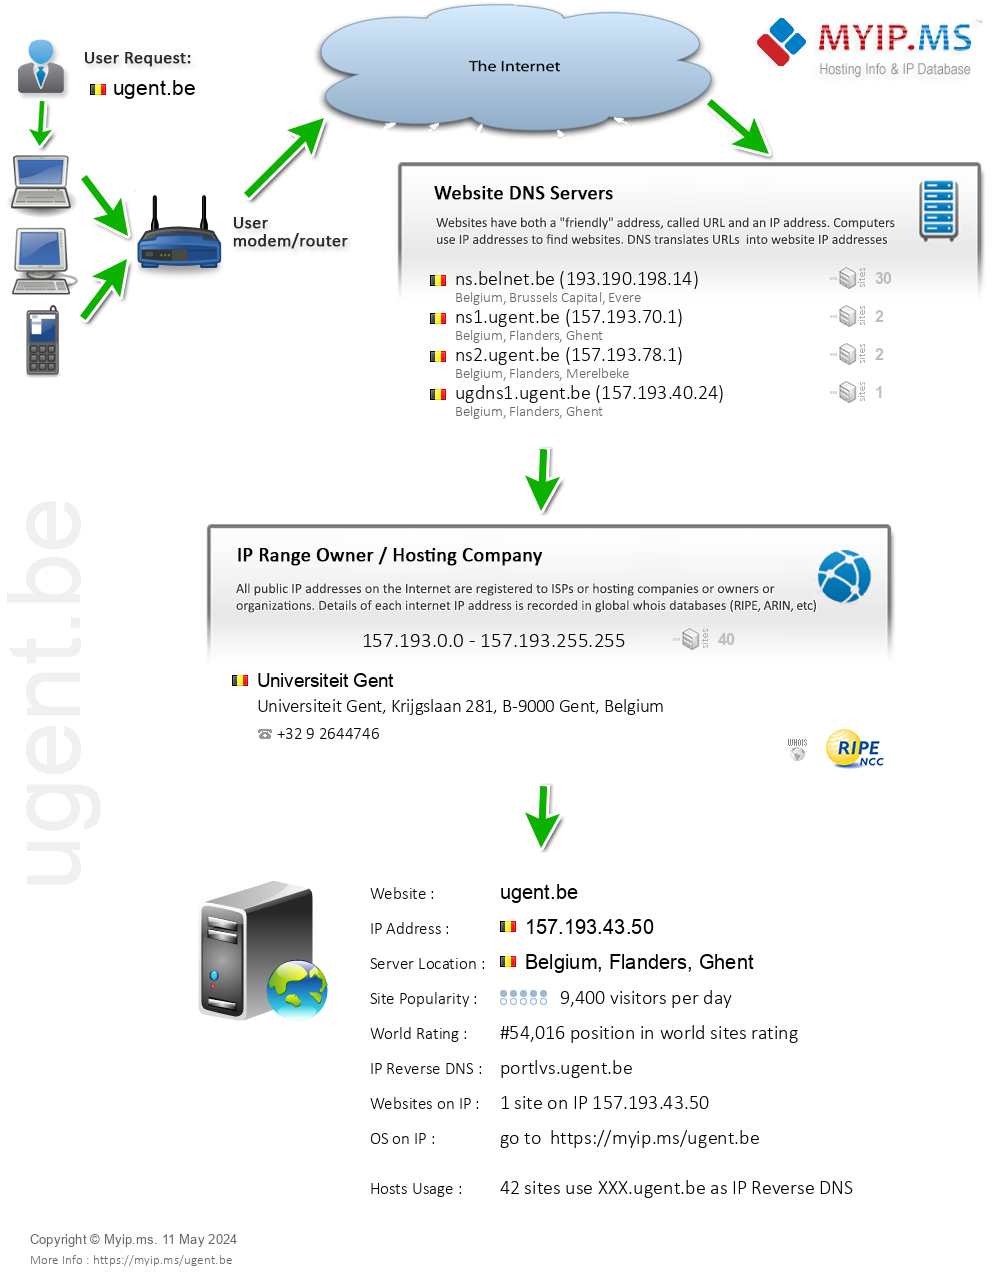 Ugent.be - Website Hosting Visual IP Diagram